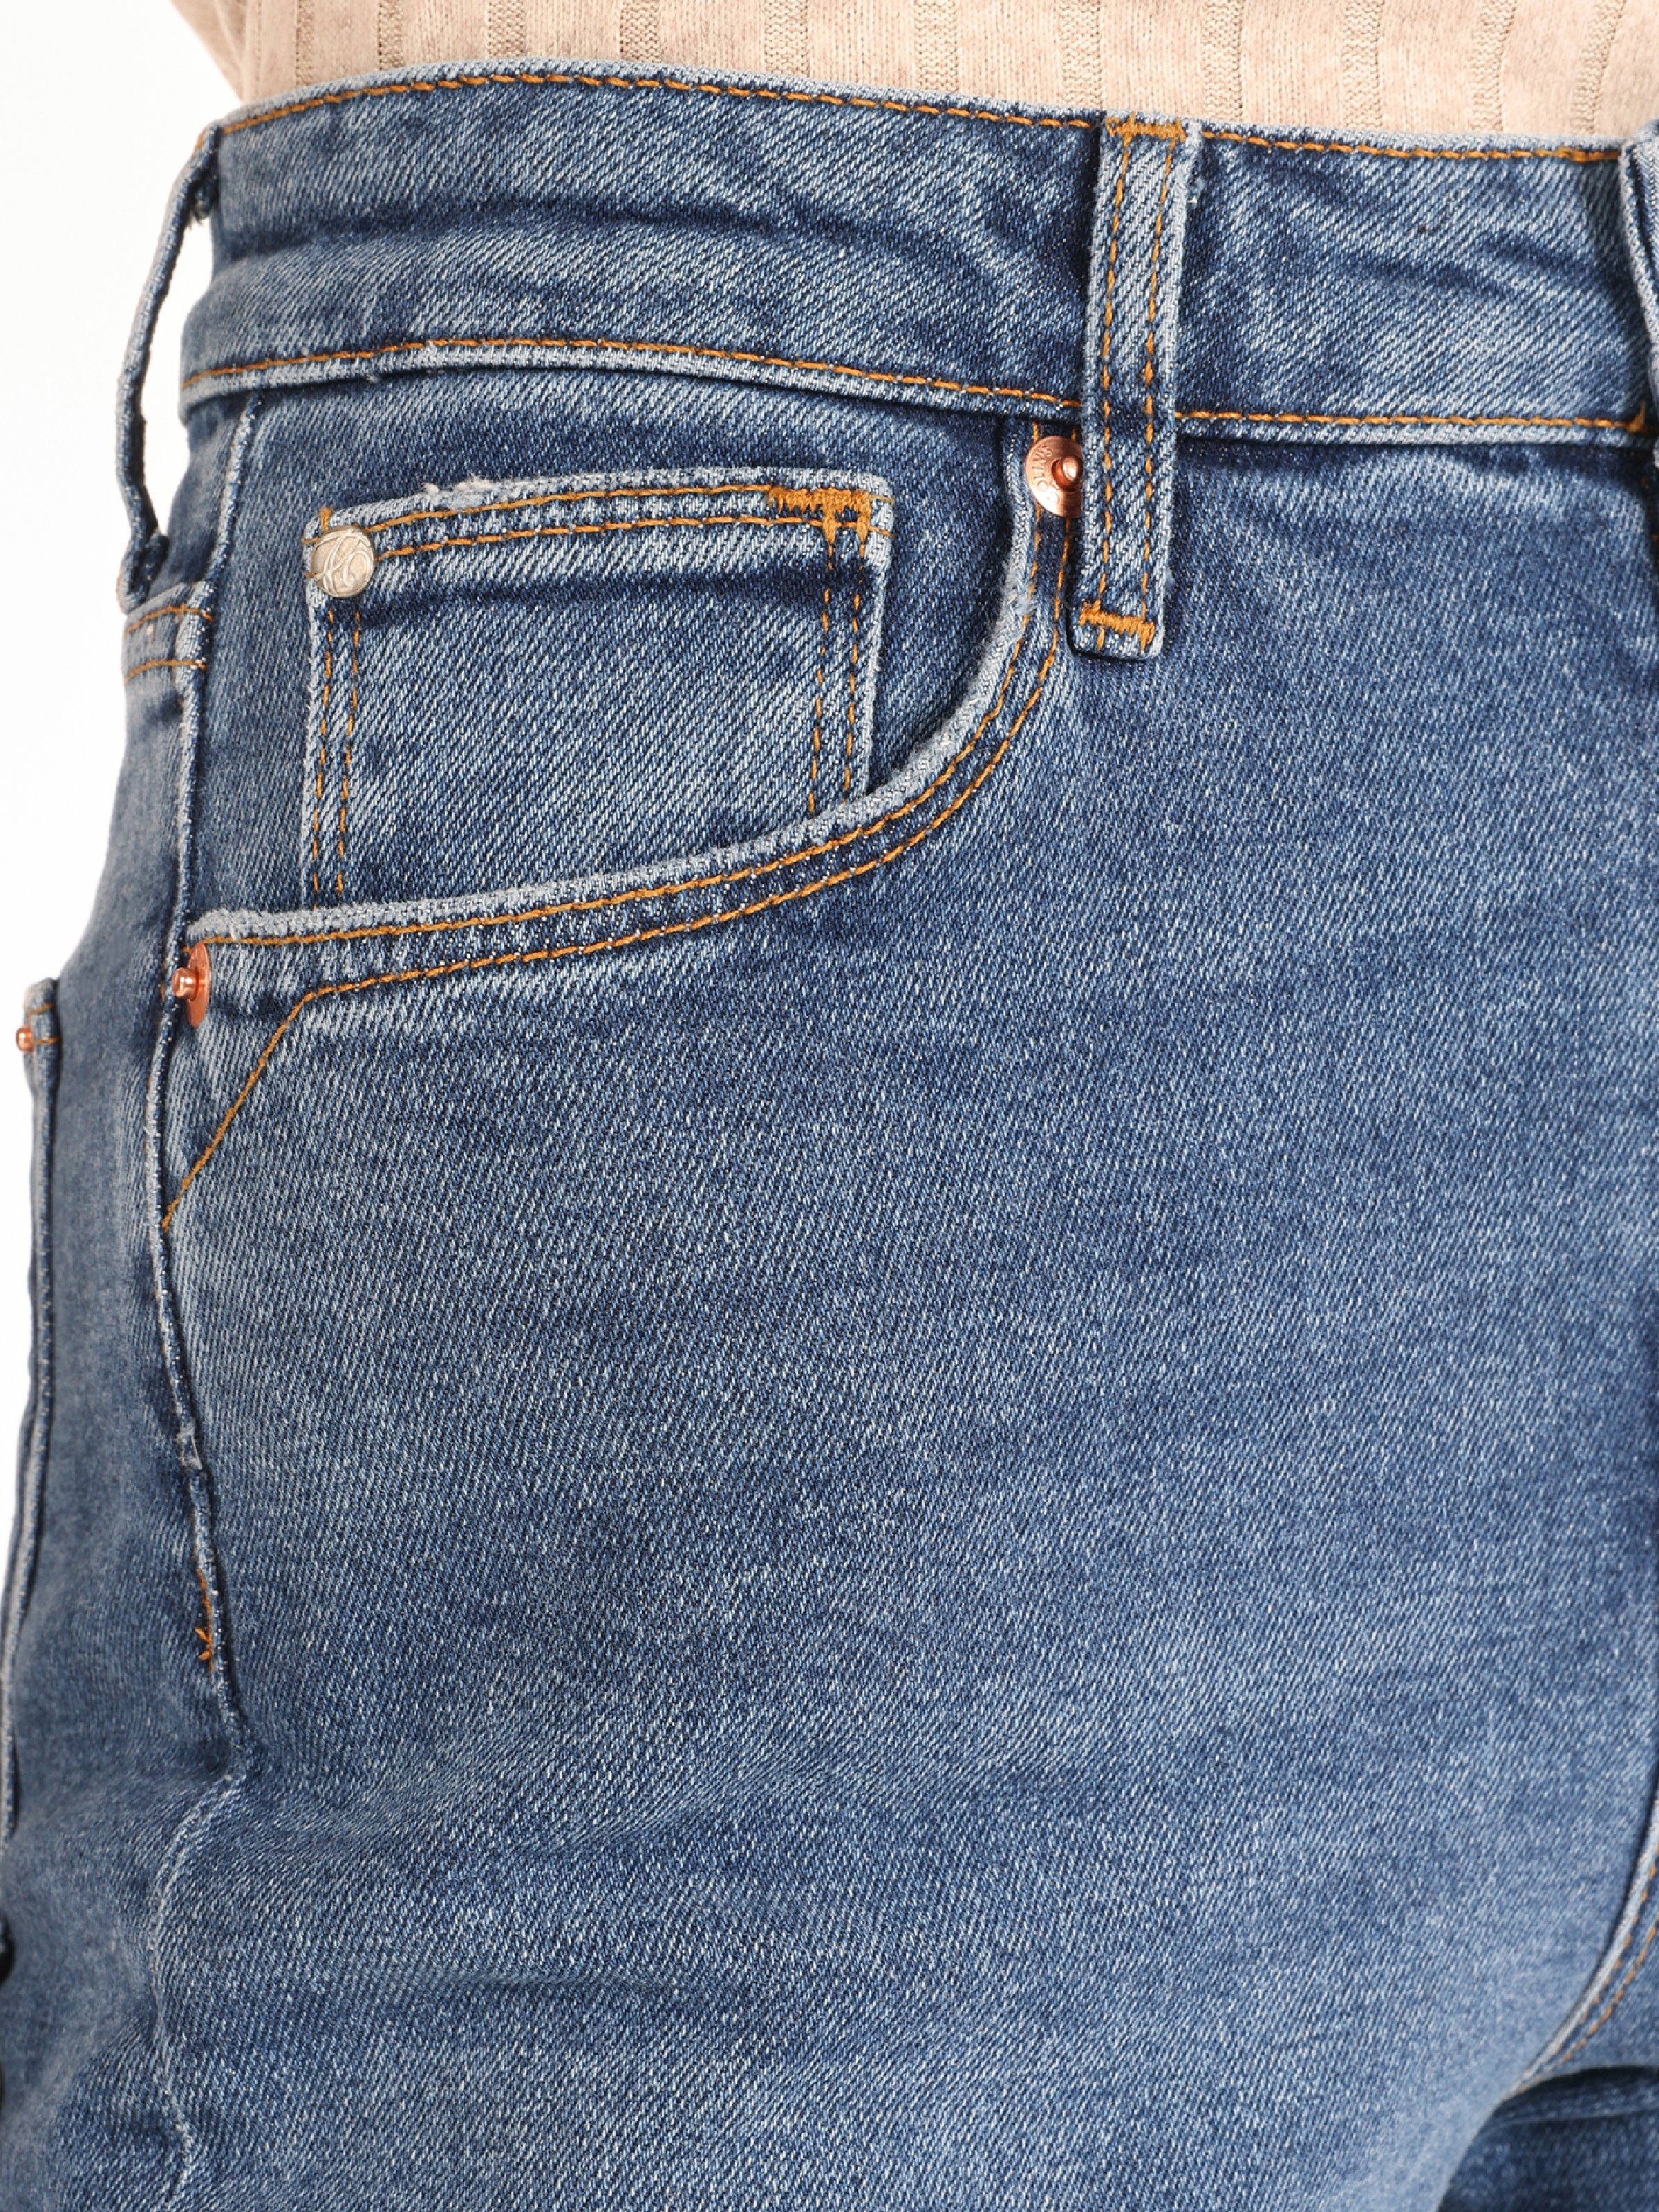 Afișați detalii pentru Pantaloni De Dama Albastru Slim Fit 891 MAYA 